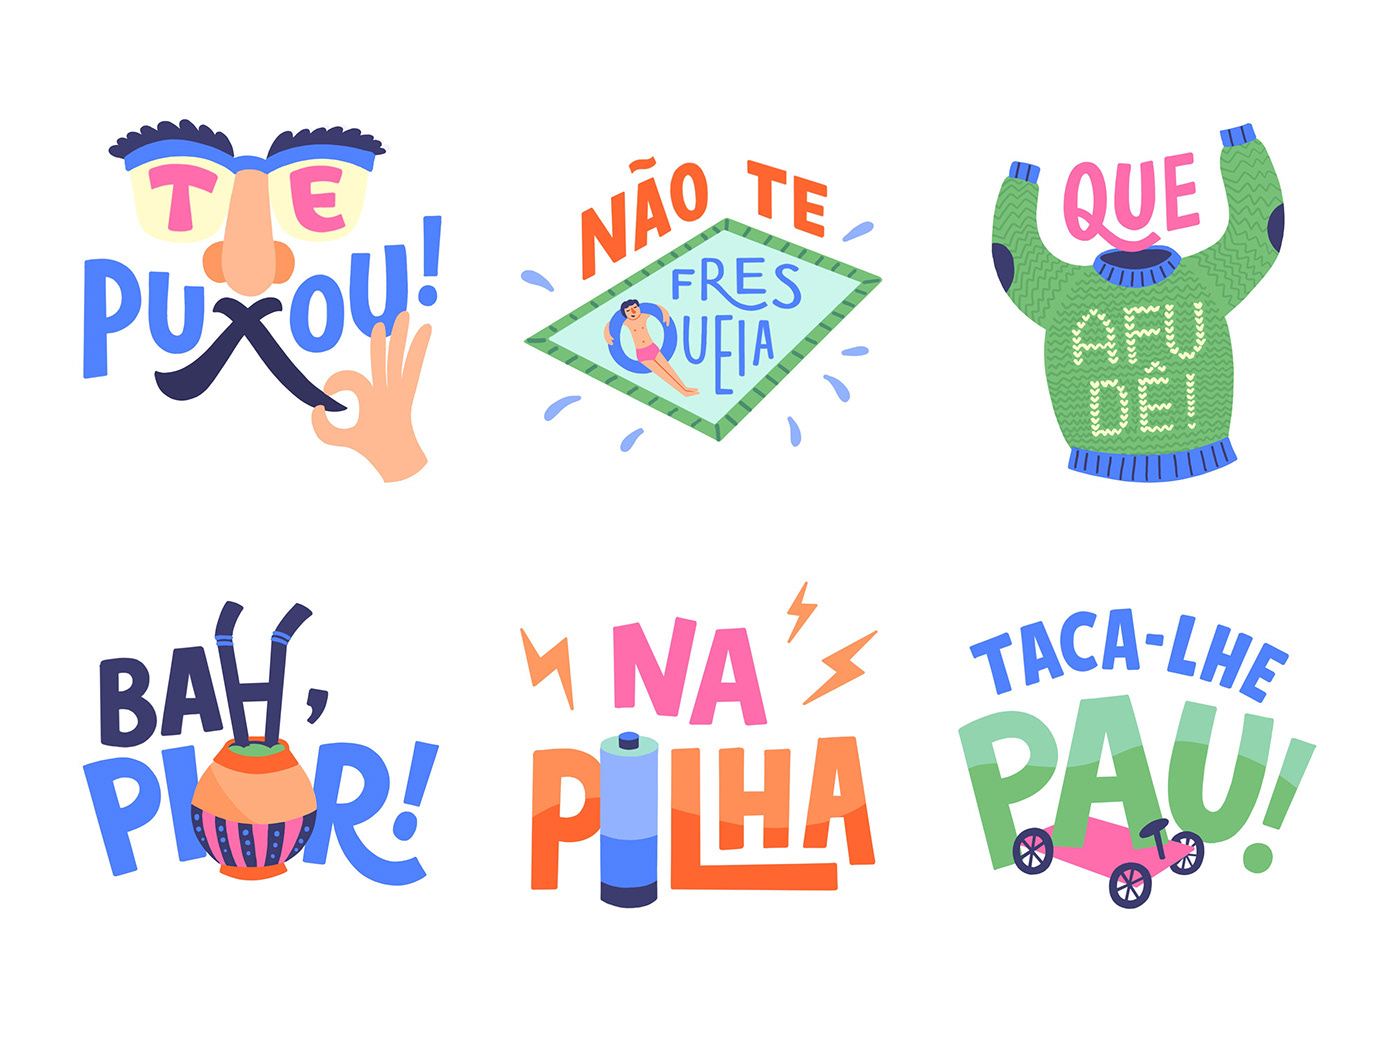 stickers google allo brazil stickers sticker lettering